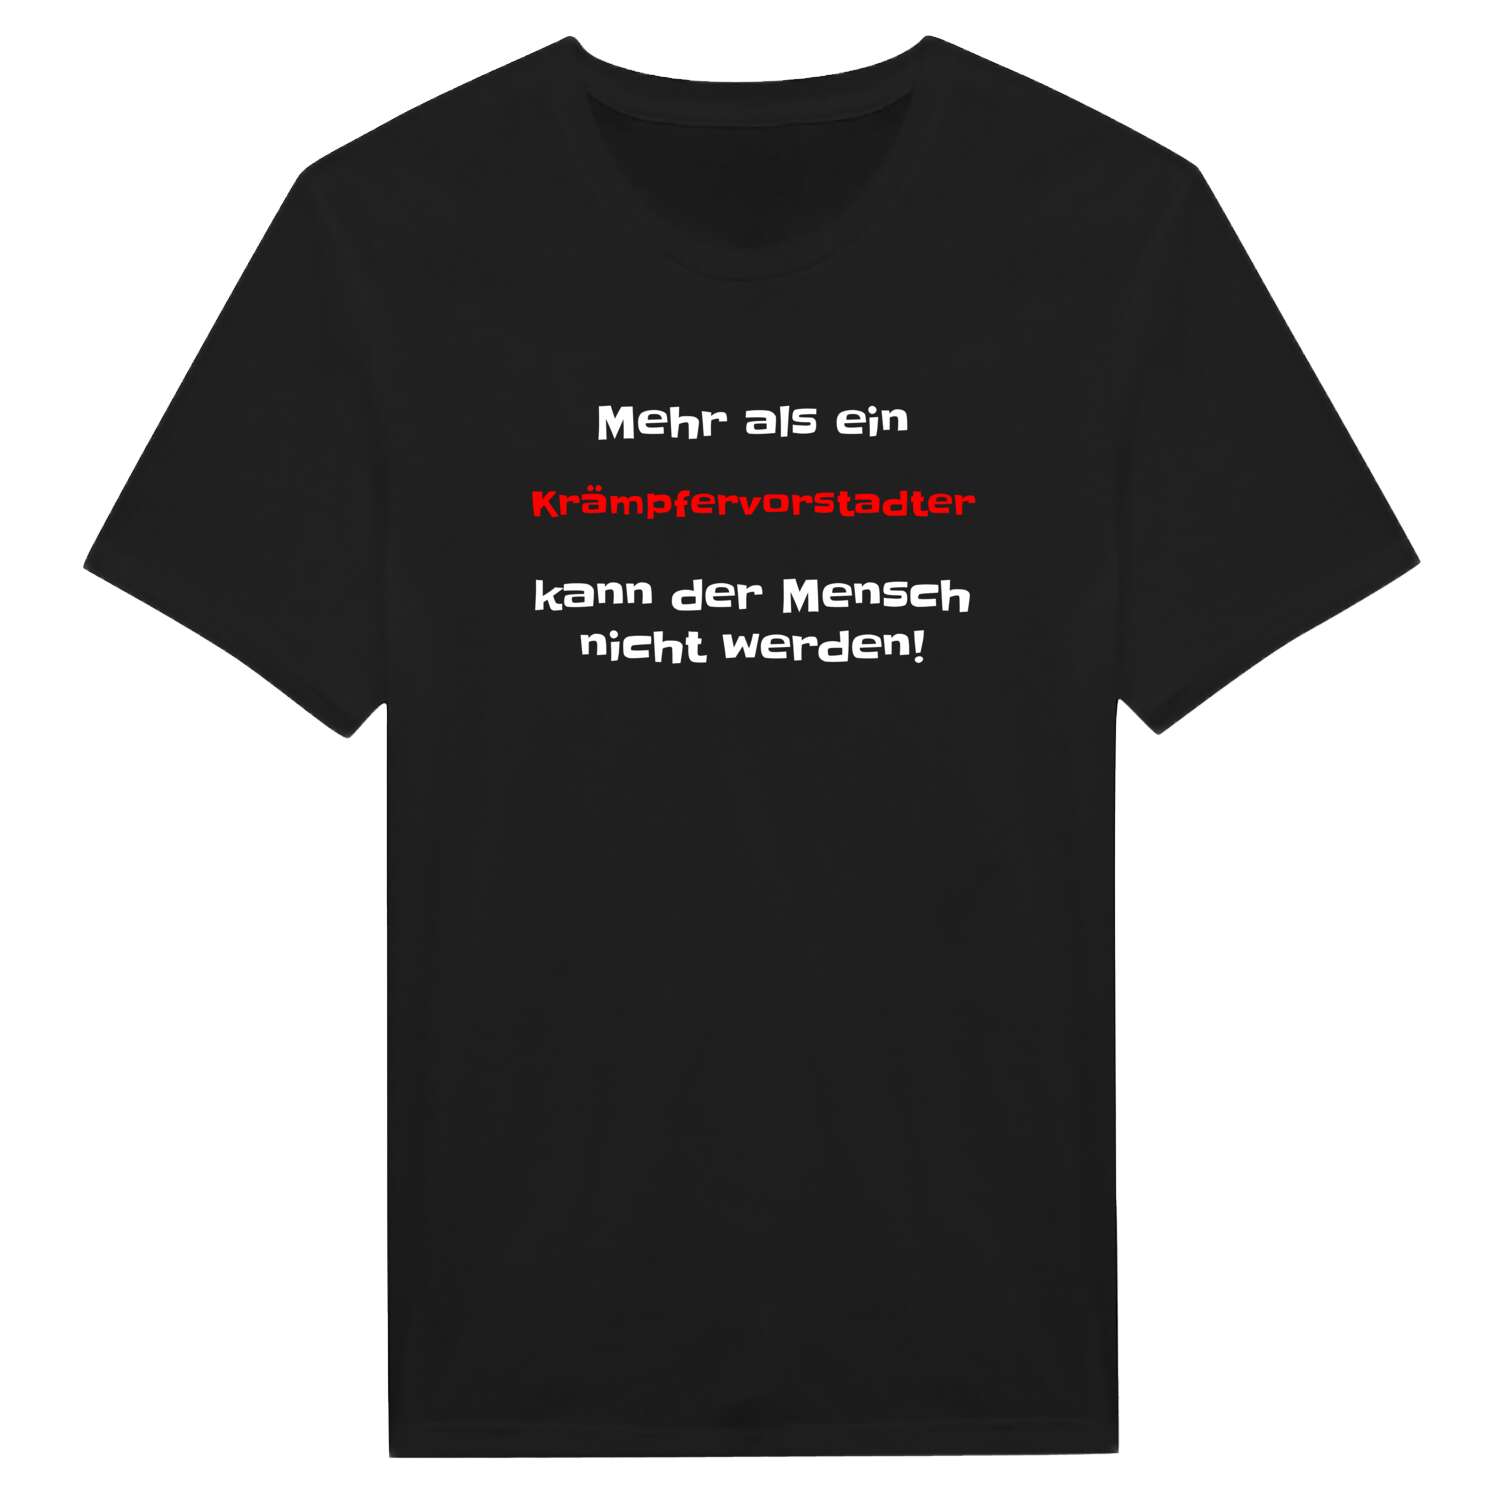 Krämpfervorstadt T-Shirt »Mehr als ein«